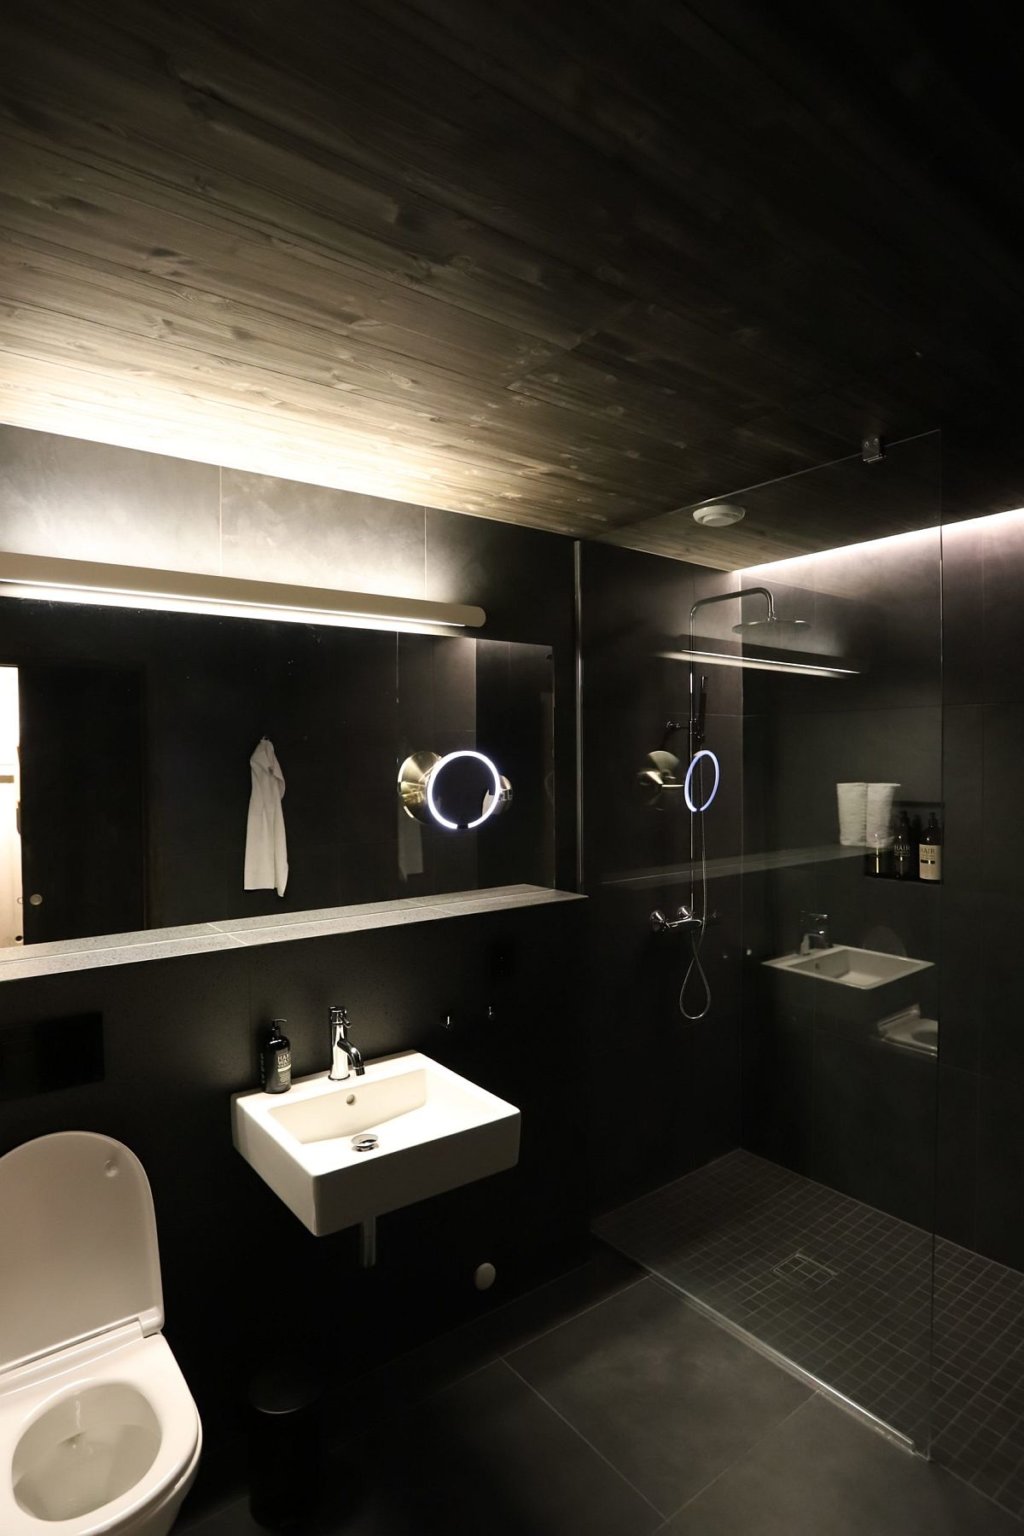 Phòng tắm khách sạn kết hợp giữa phong cách hiện đại và đơn giản của vùng Scandinavian, với sắc đen huyền bí chủ đạo.